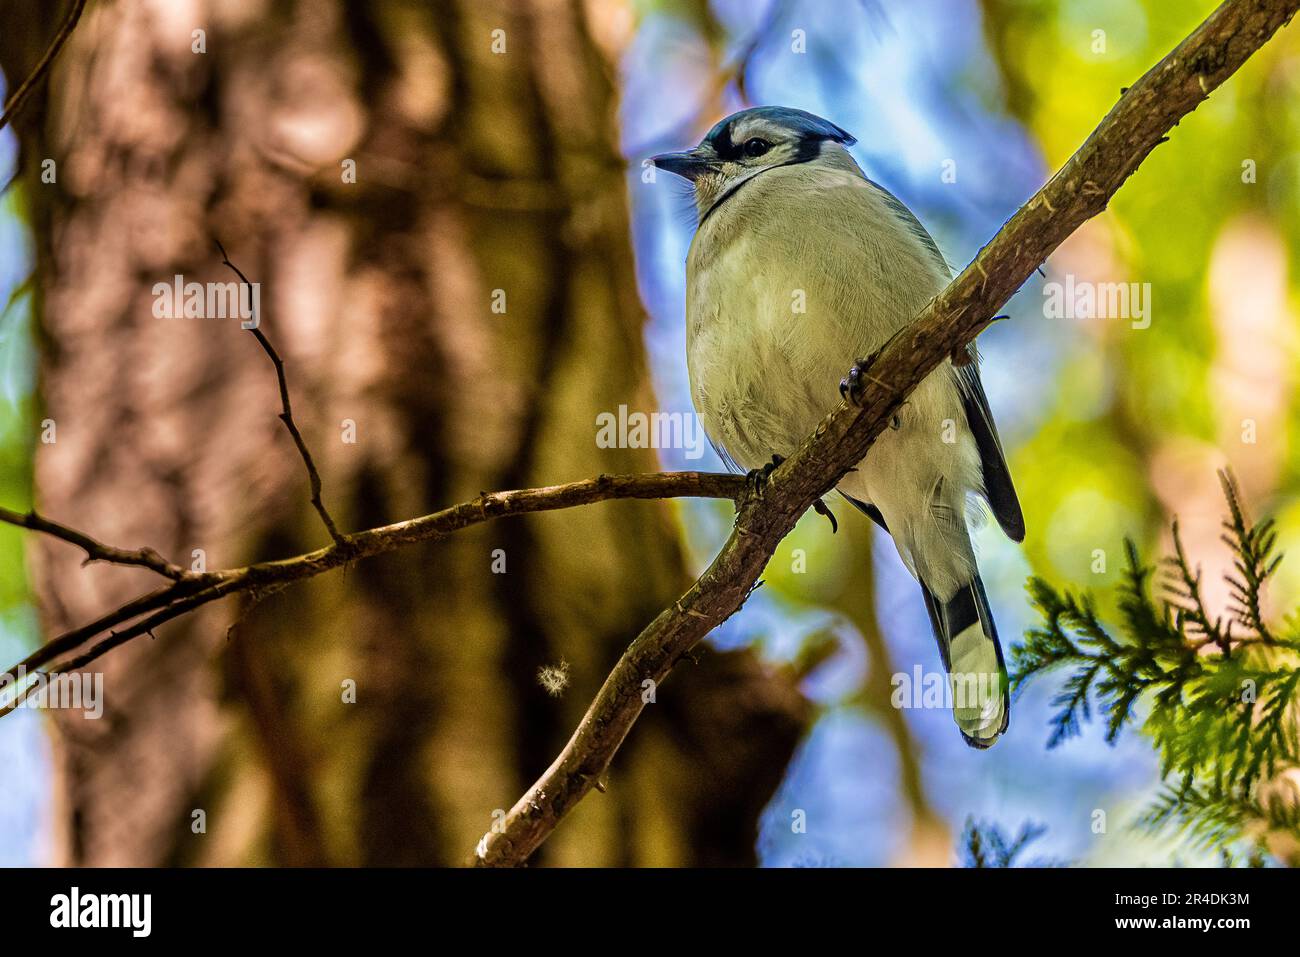 Blue Jay. Uccelli del Canada. Nel bosco canadese, ho incontrato un uccello, il simbolo della squadra di baseball Blue Jay di Toronto. Foto Stock